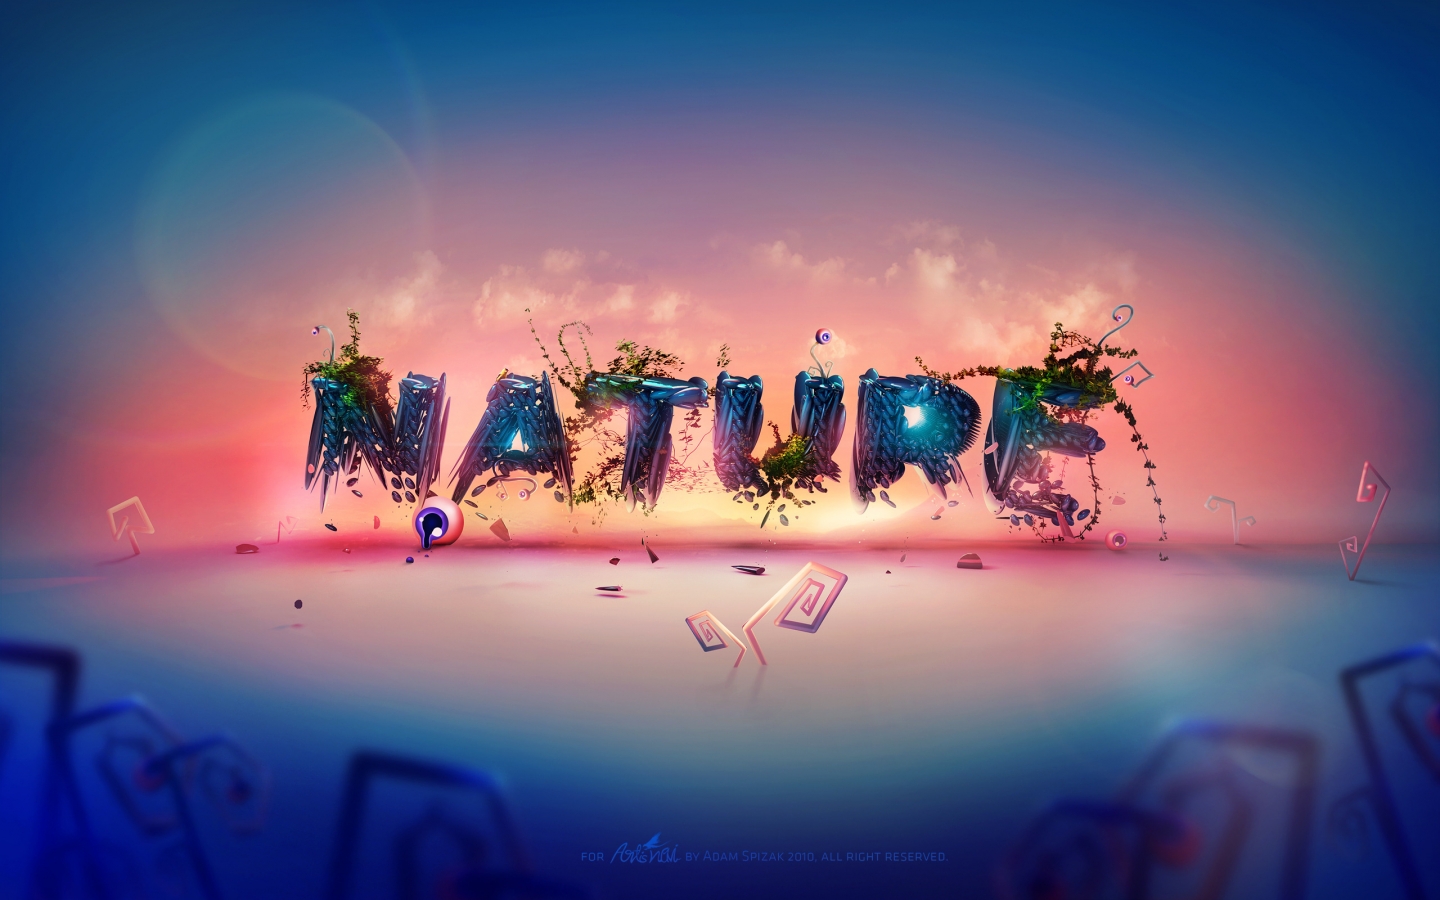 Dali Nature for 1440 x 900 widescreen resolution